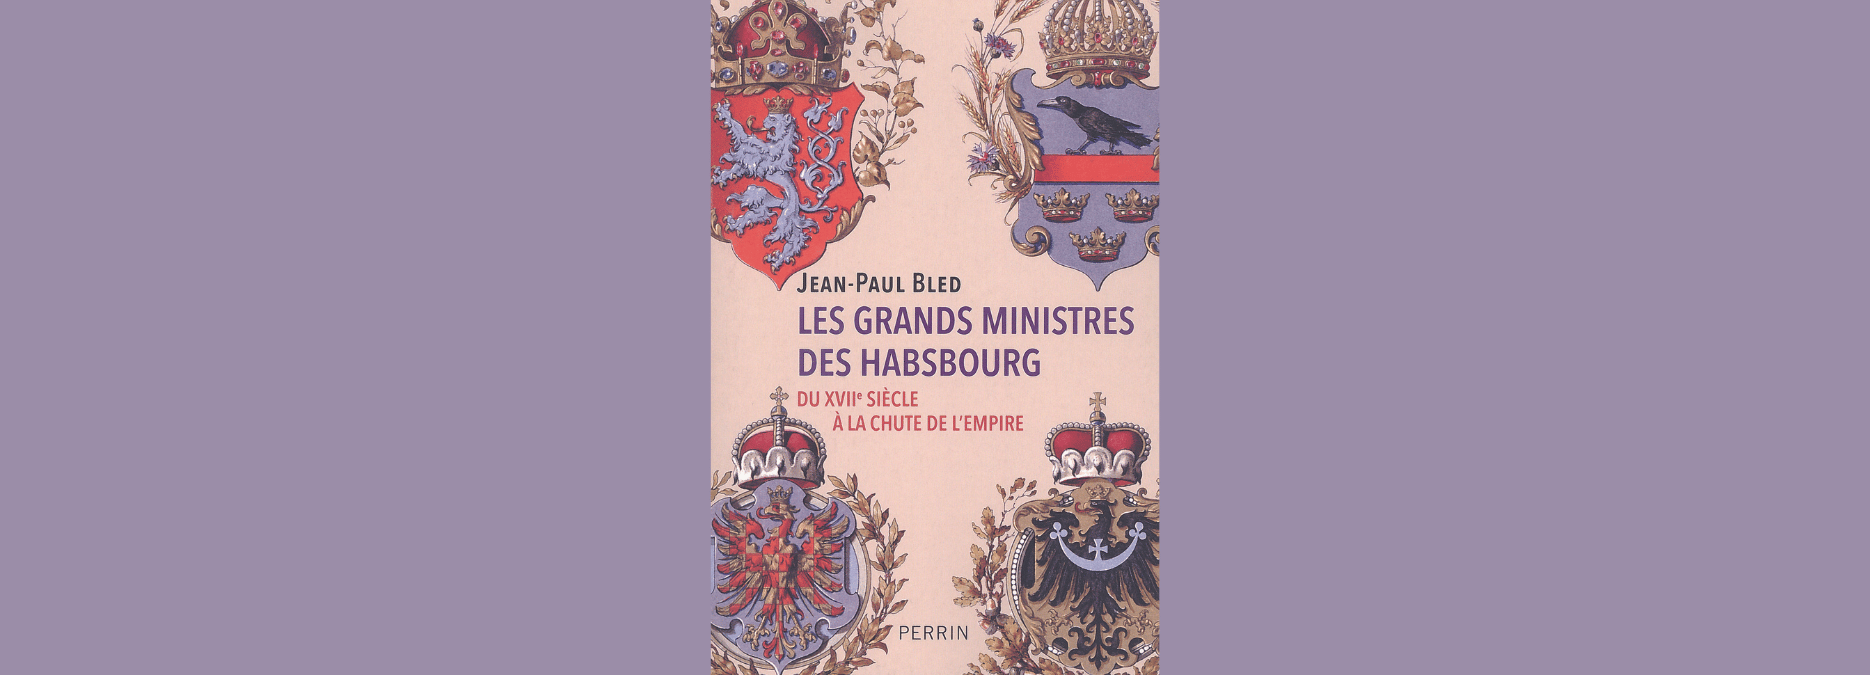 Les grands ministres des Habsbourg du XVIIe siècle à la chute de l’empire, par Jean-Paul Bled